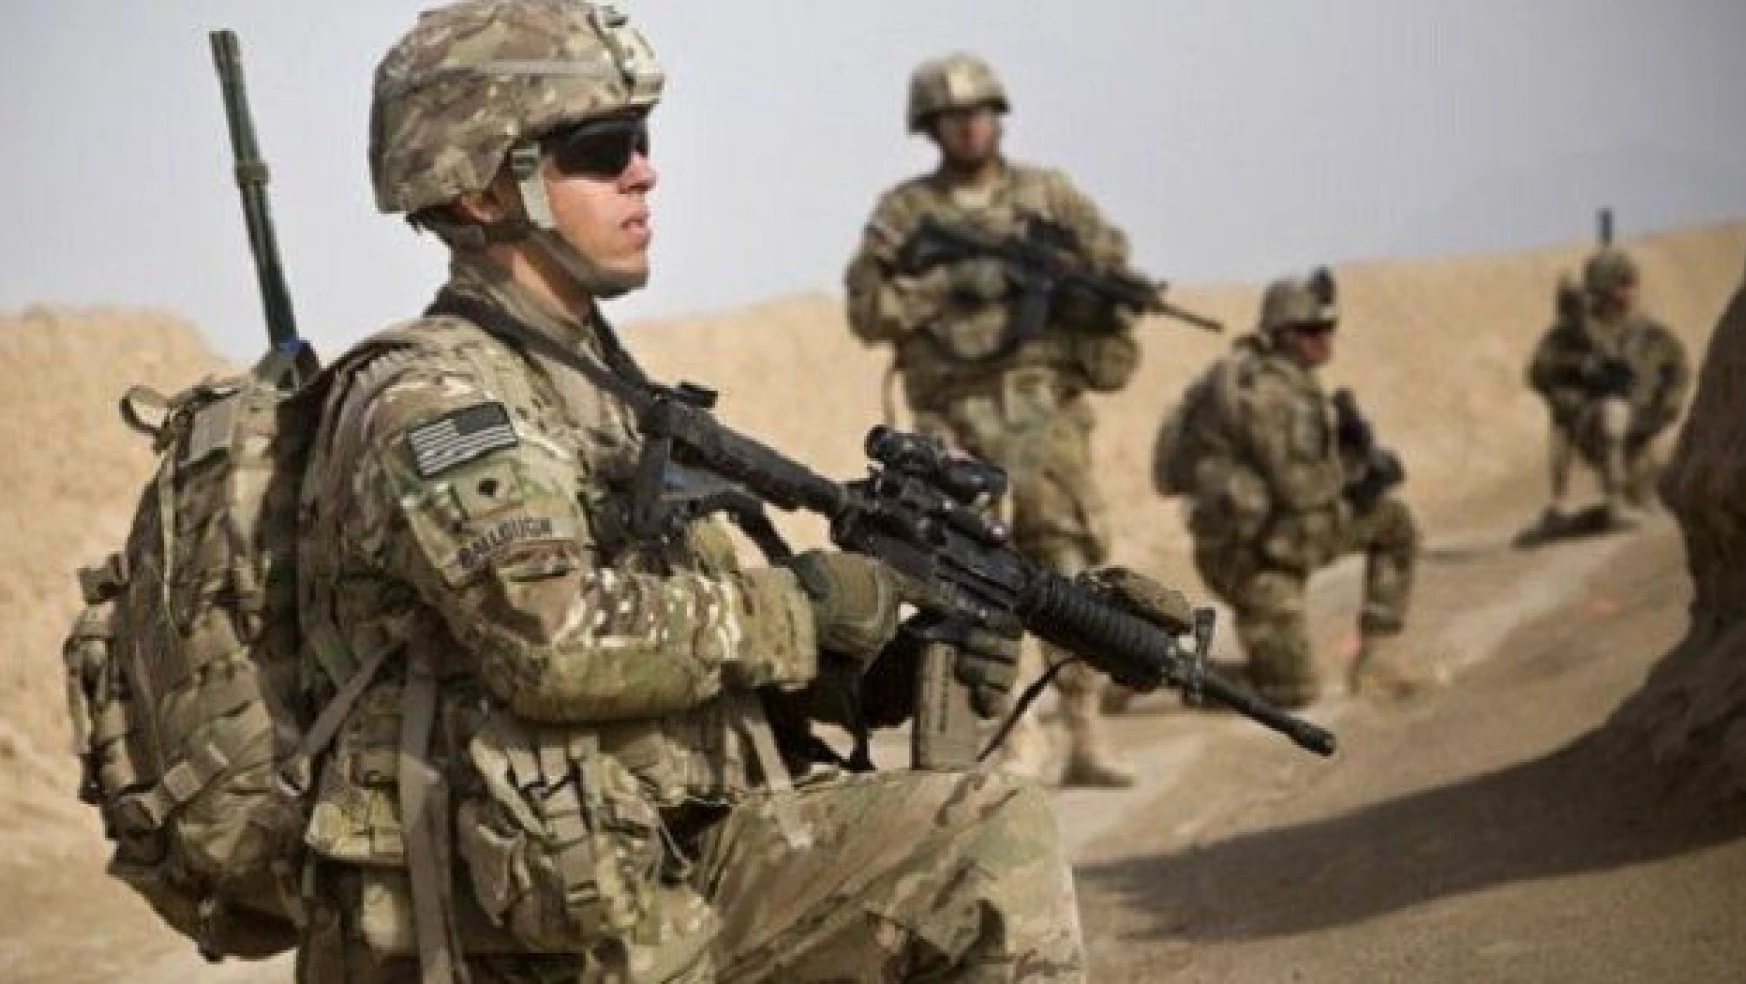 Amerikalılar, Suriye ve Irak'a asker gönderilmesini istiyor